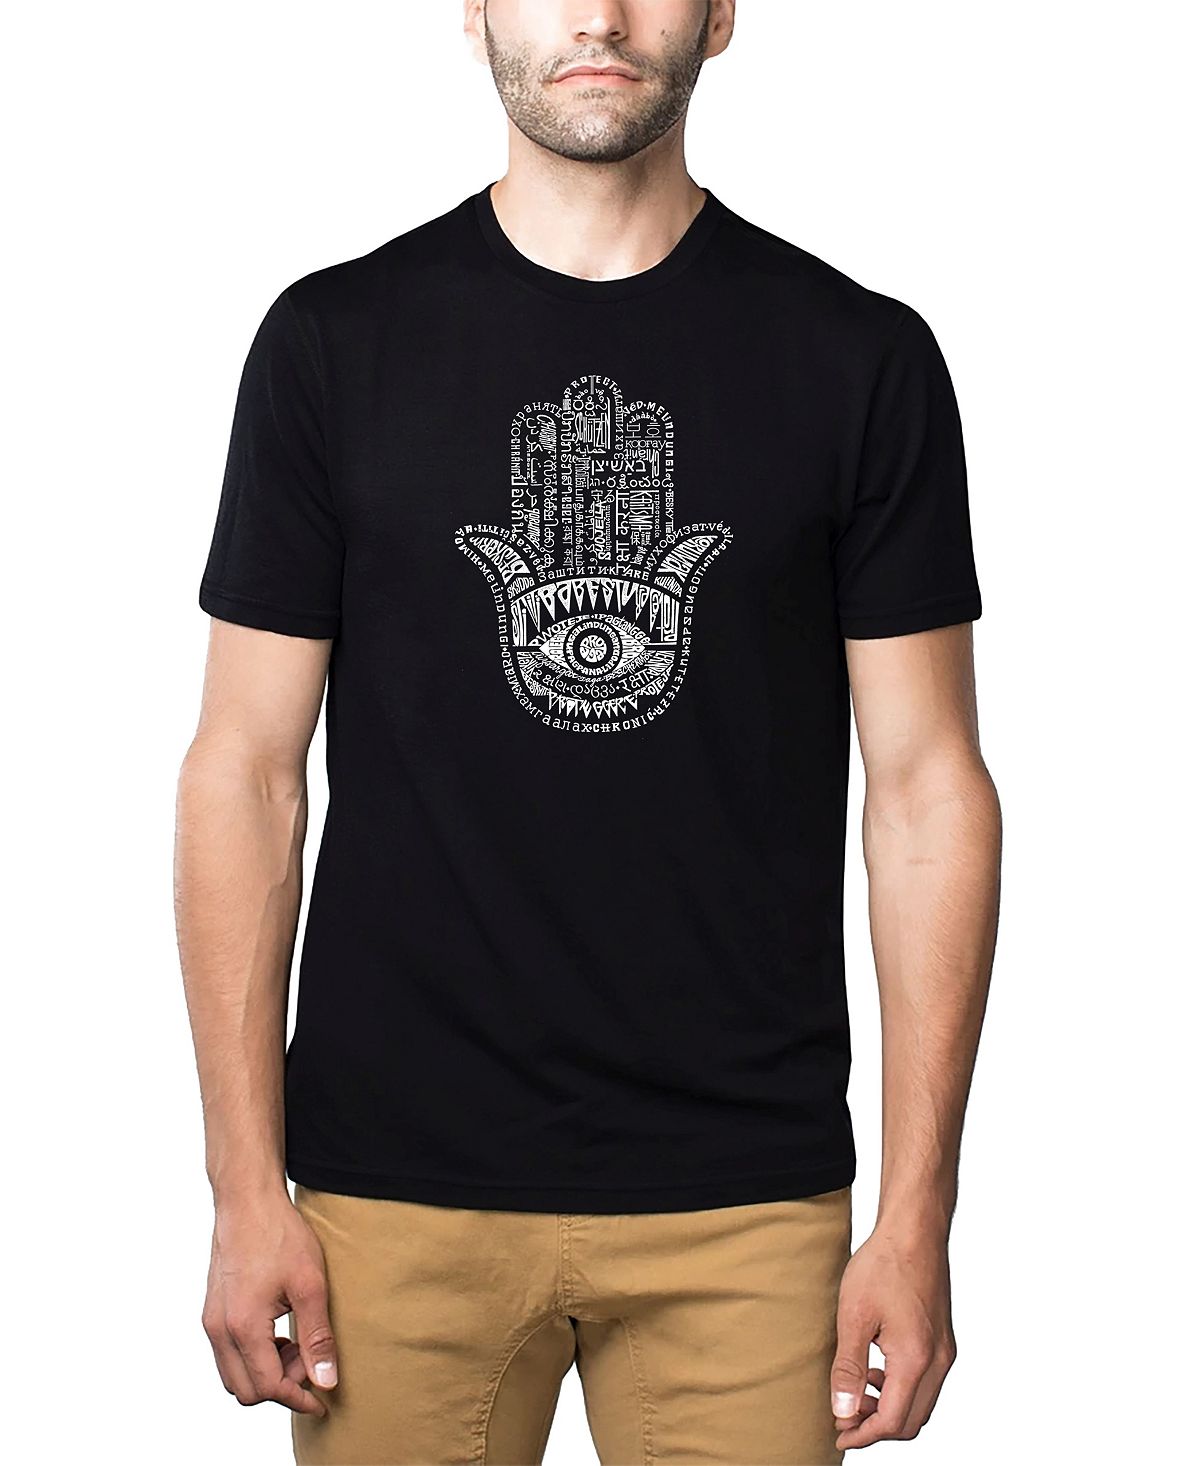 Мужская футболка premium word art - хамса LA Pop Art, черный